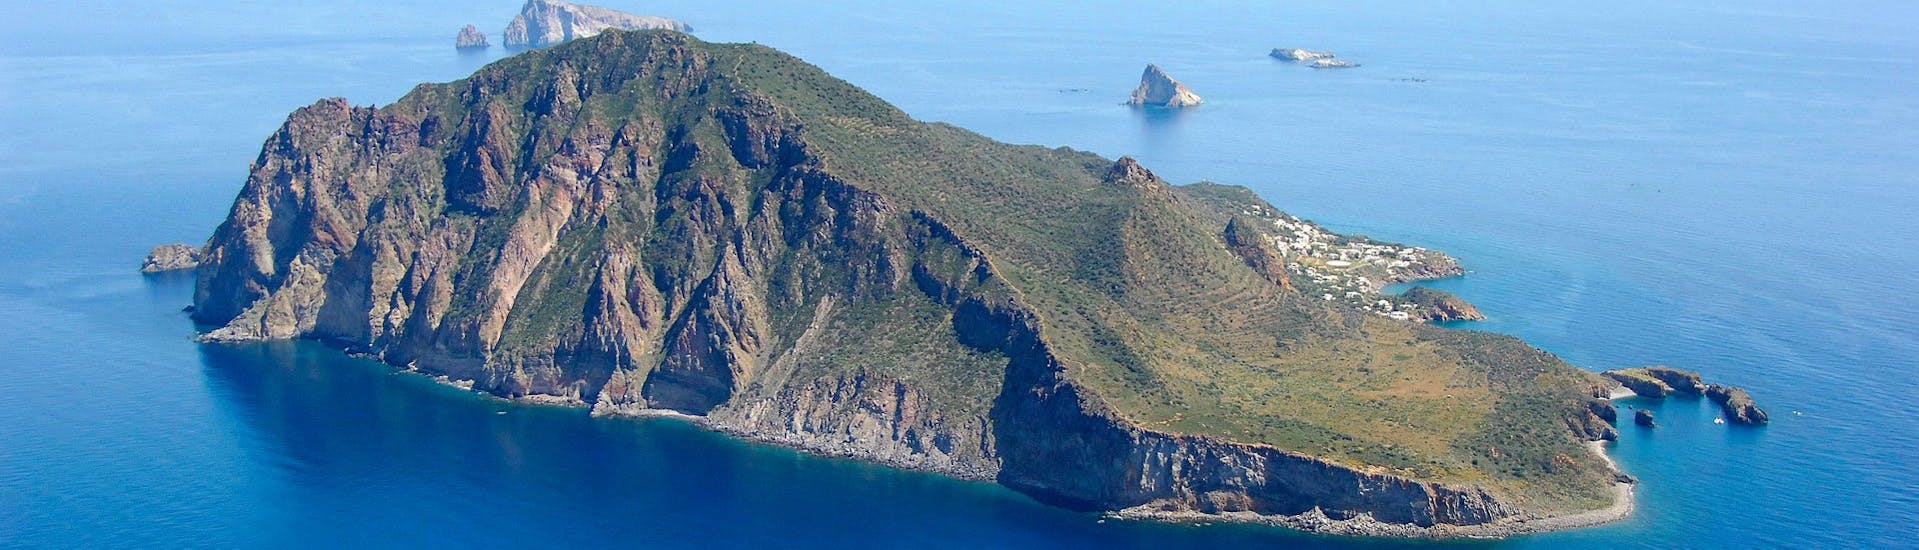 Photo de l'île de Panarea.